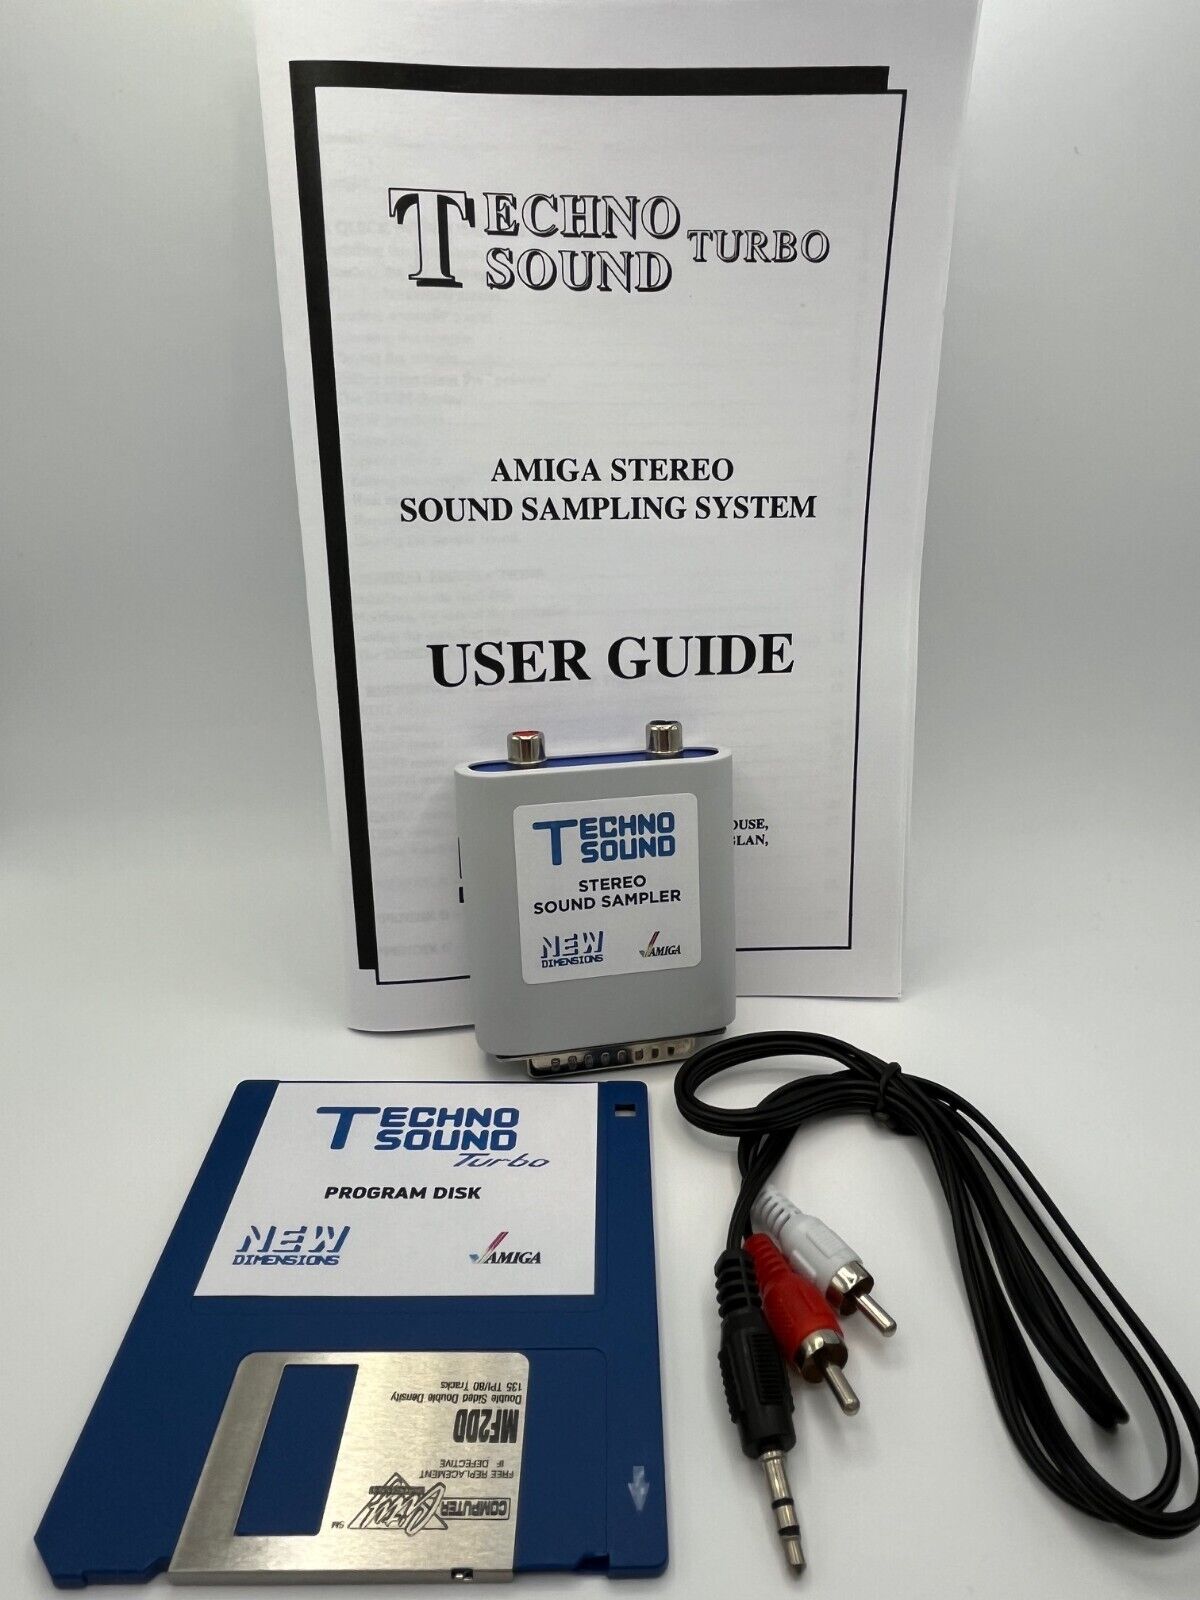 Commodore Amiga Stereo Sound Sampler Techno Sound Turbo Rare Limited US Seller